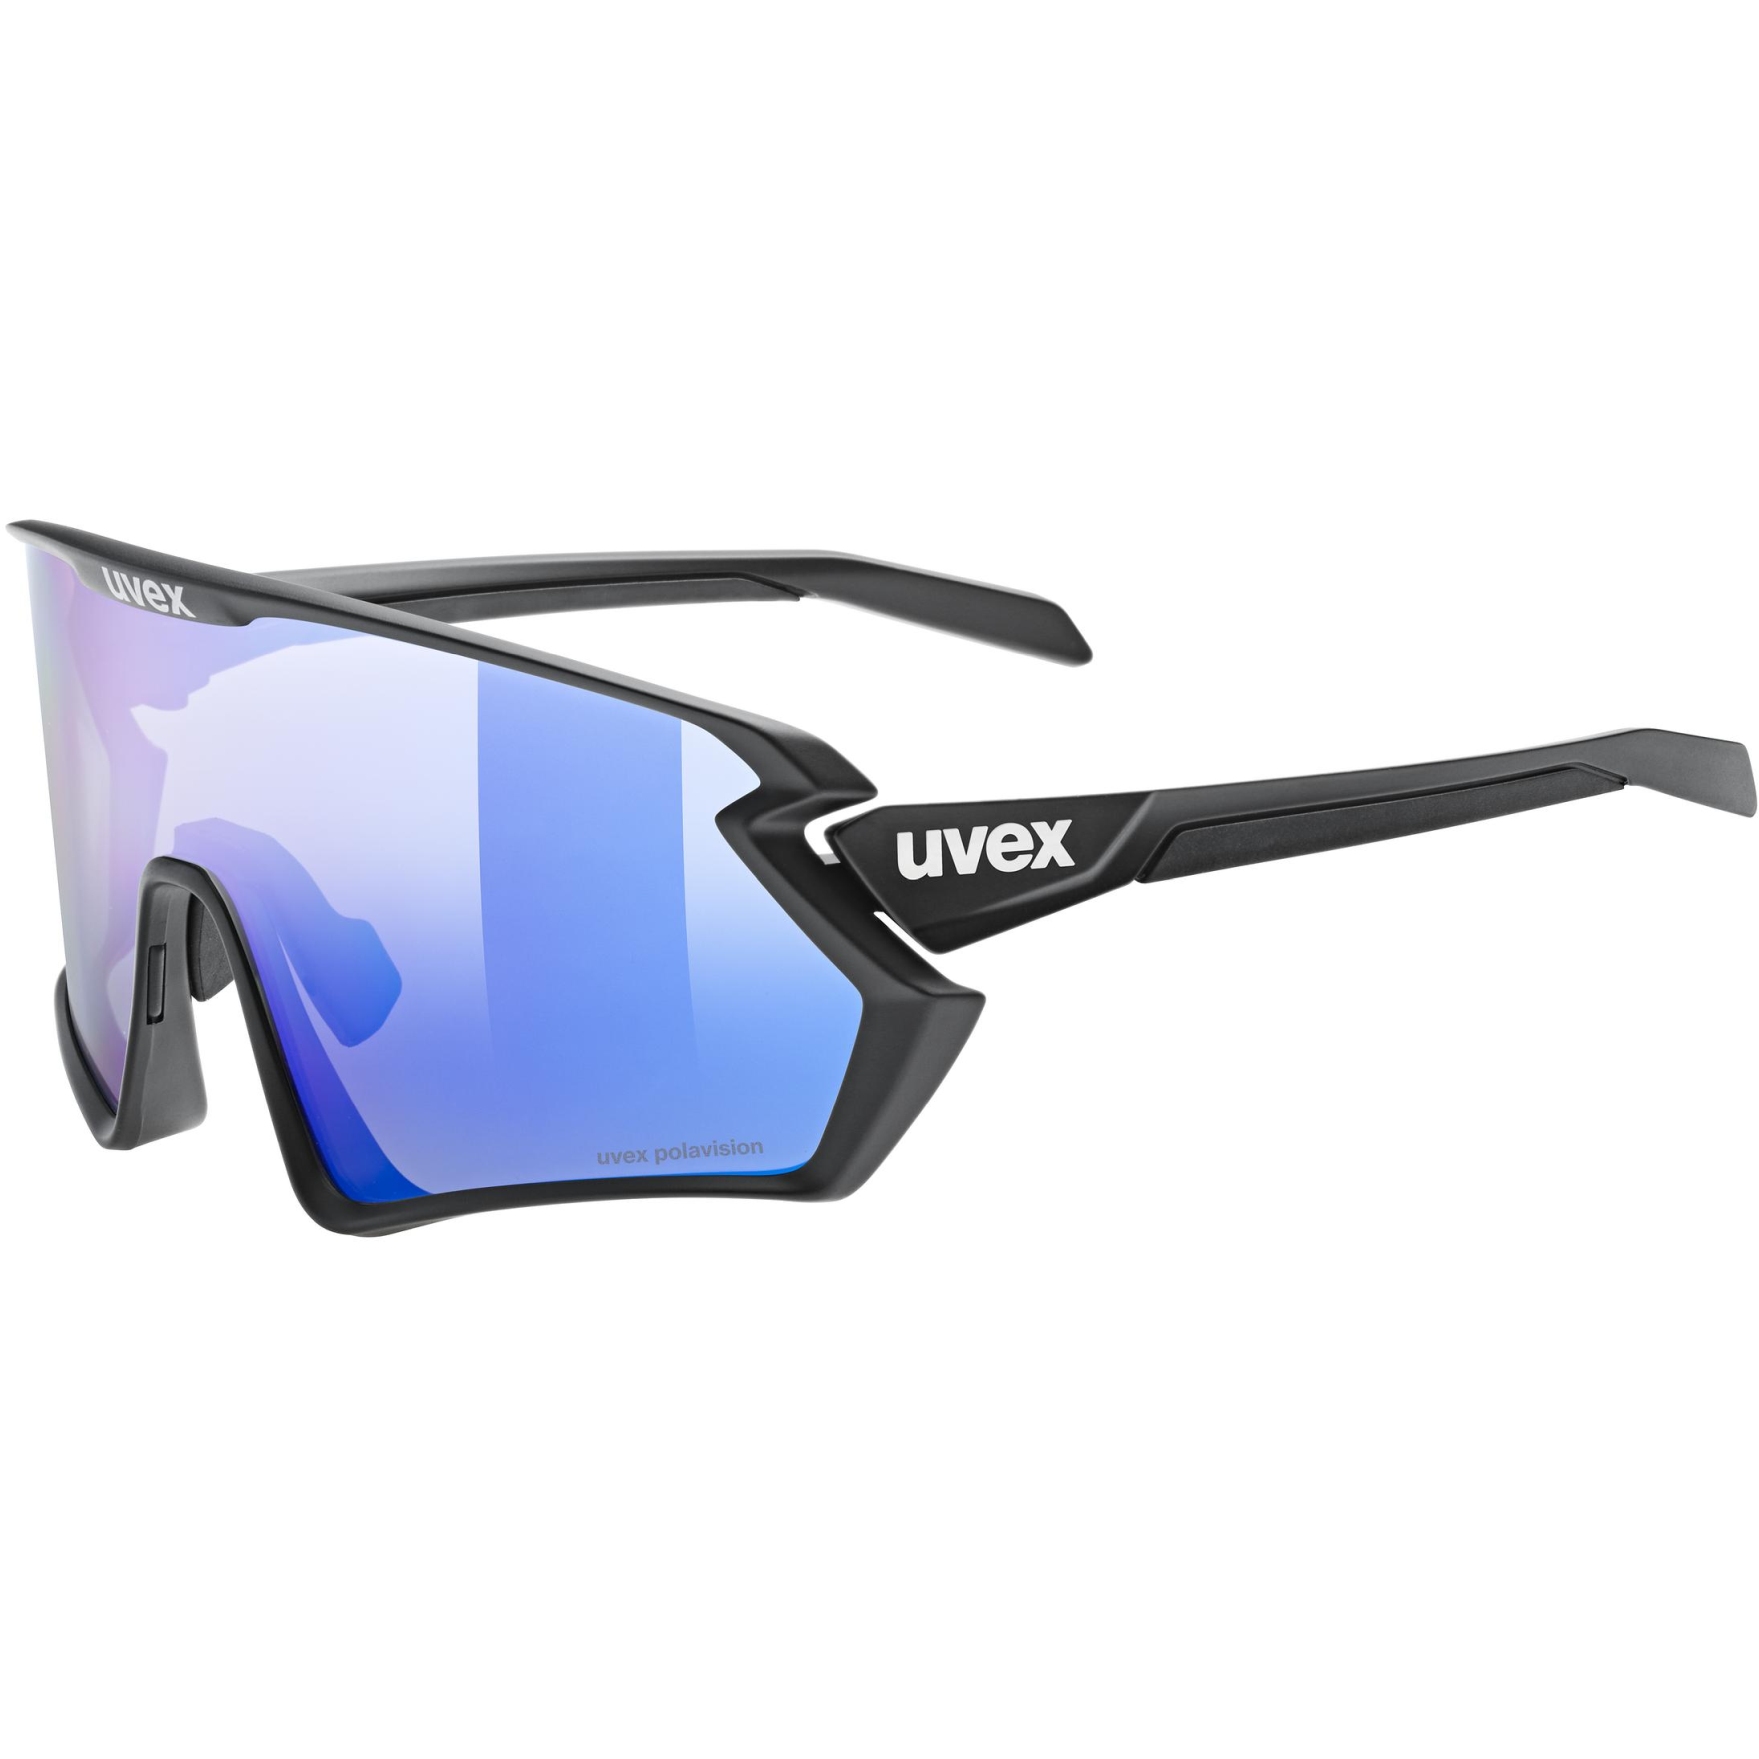 Produktbild von Uvex sportstyle 231 2.0 P Brille - black matt/polavision supravision mirror blue